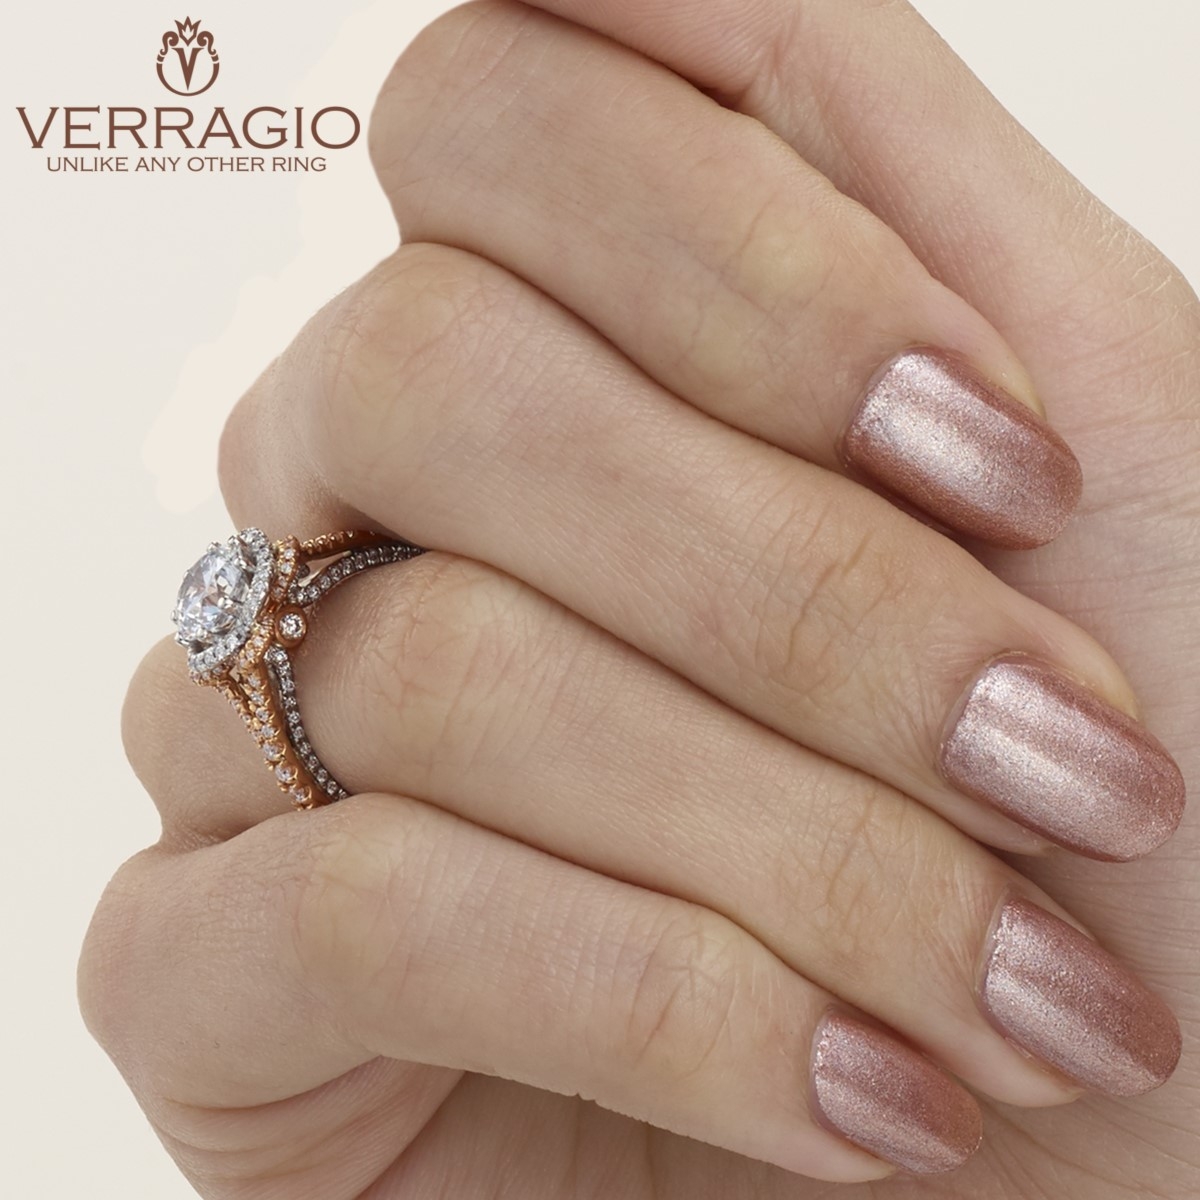 Verragio Couture-0444-2RW Platinum Engagement Ring